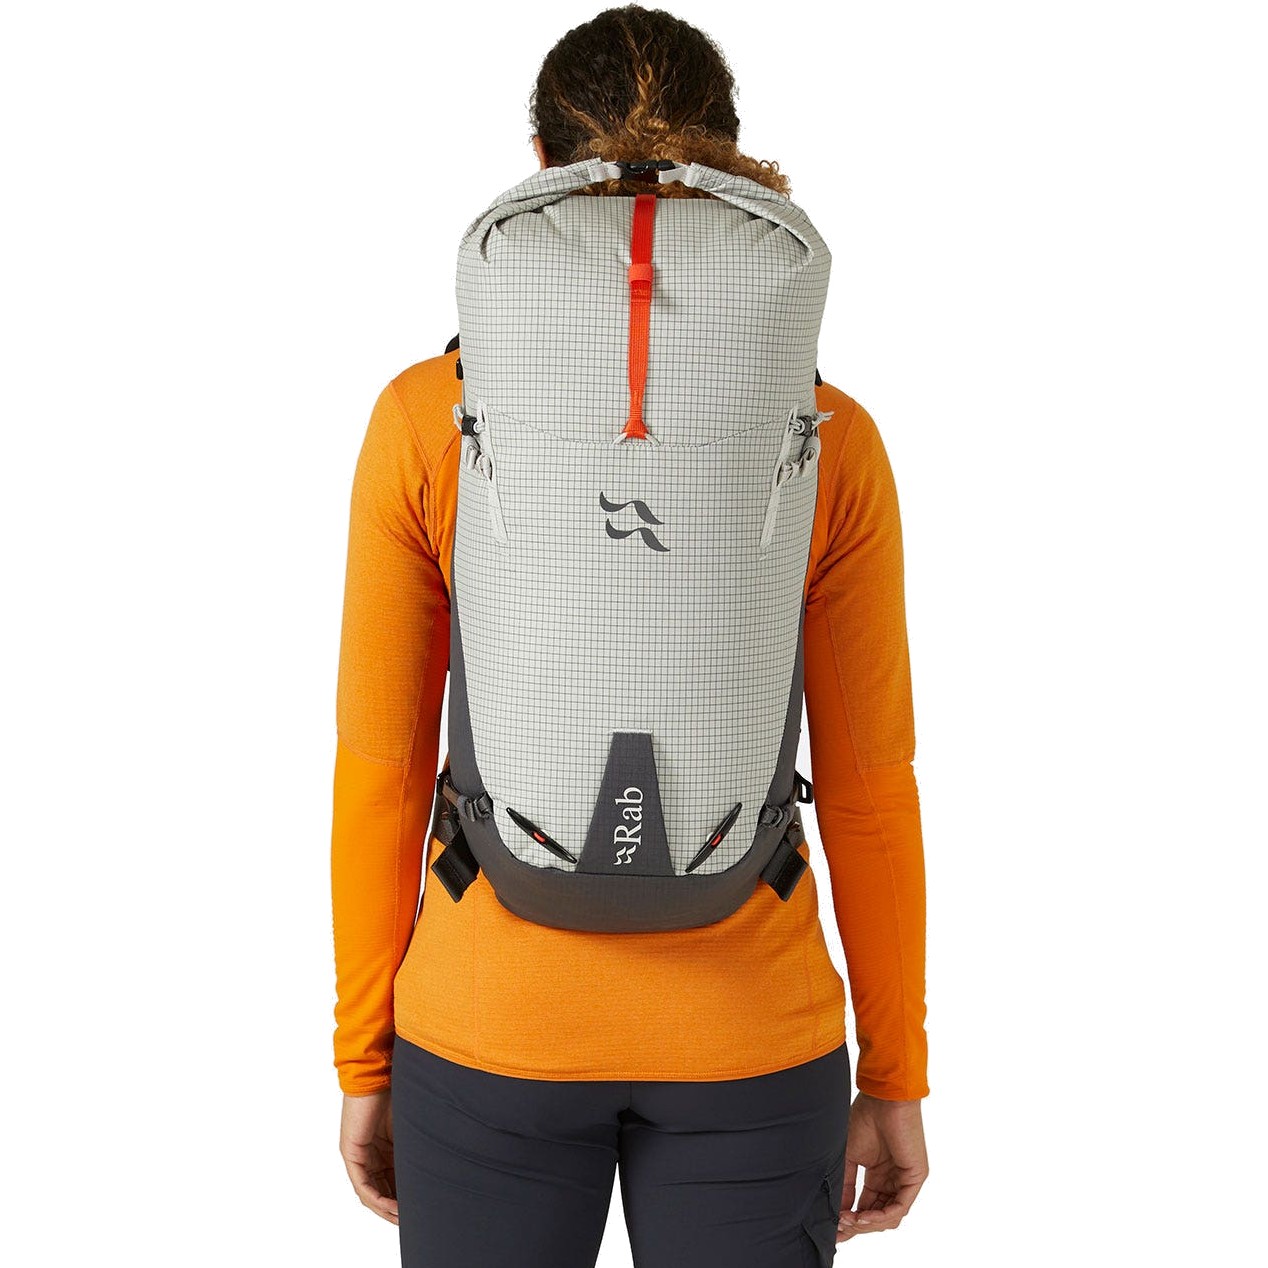 Rab Latok 28 Climbing/Mountaineering Backpack